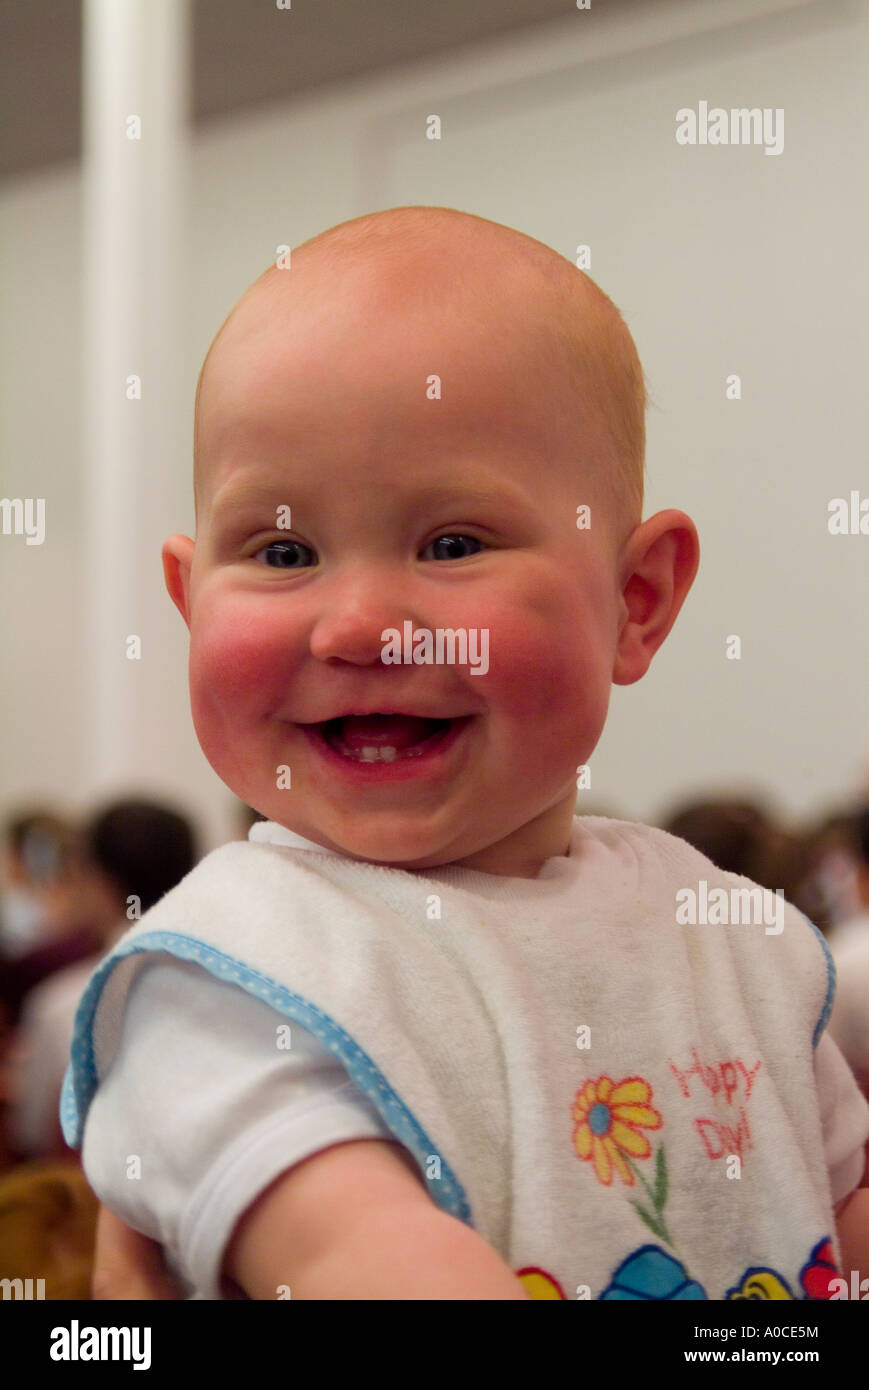 Un rire bébé joues rose Banque D'Images